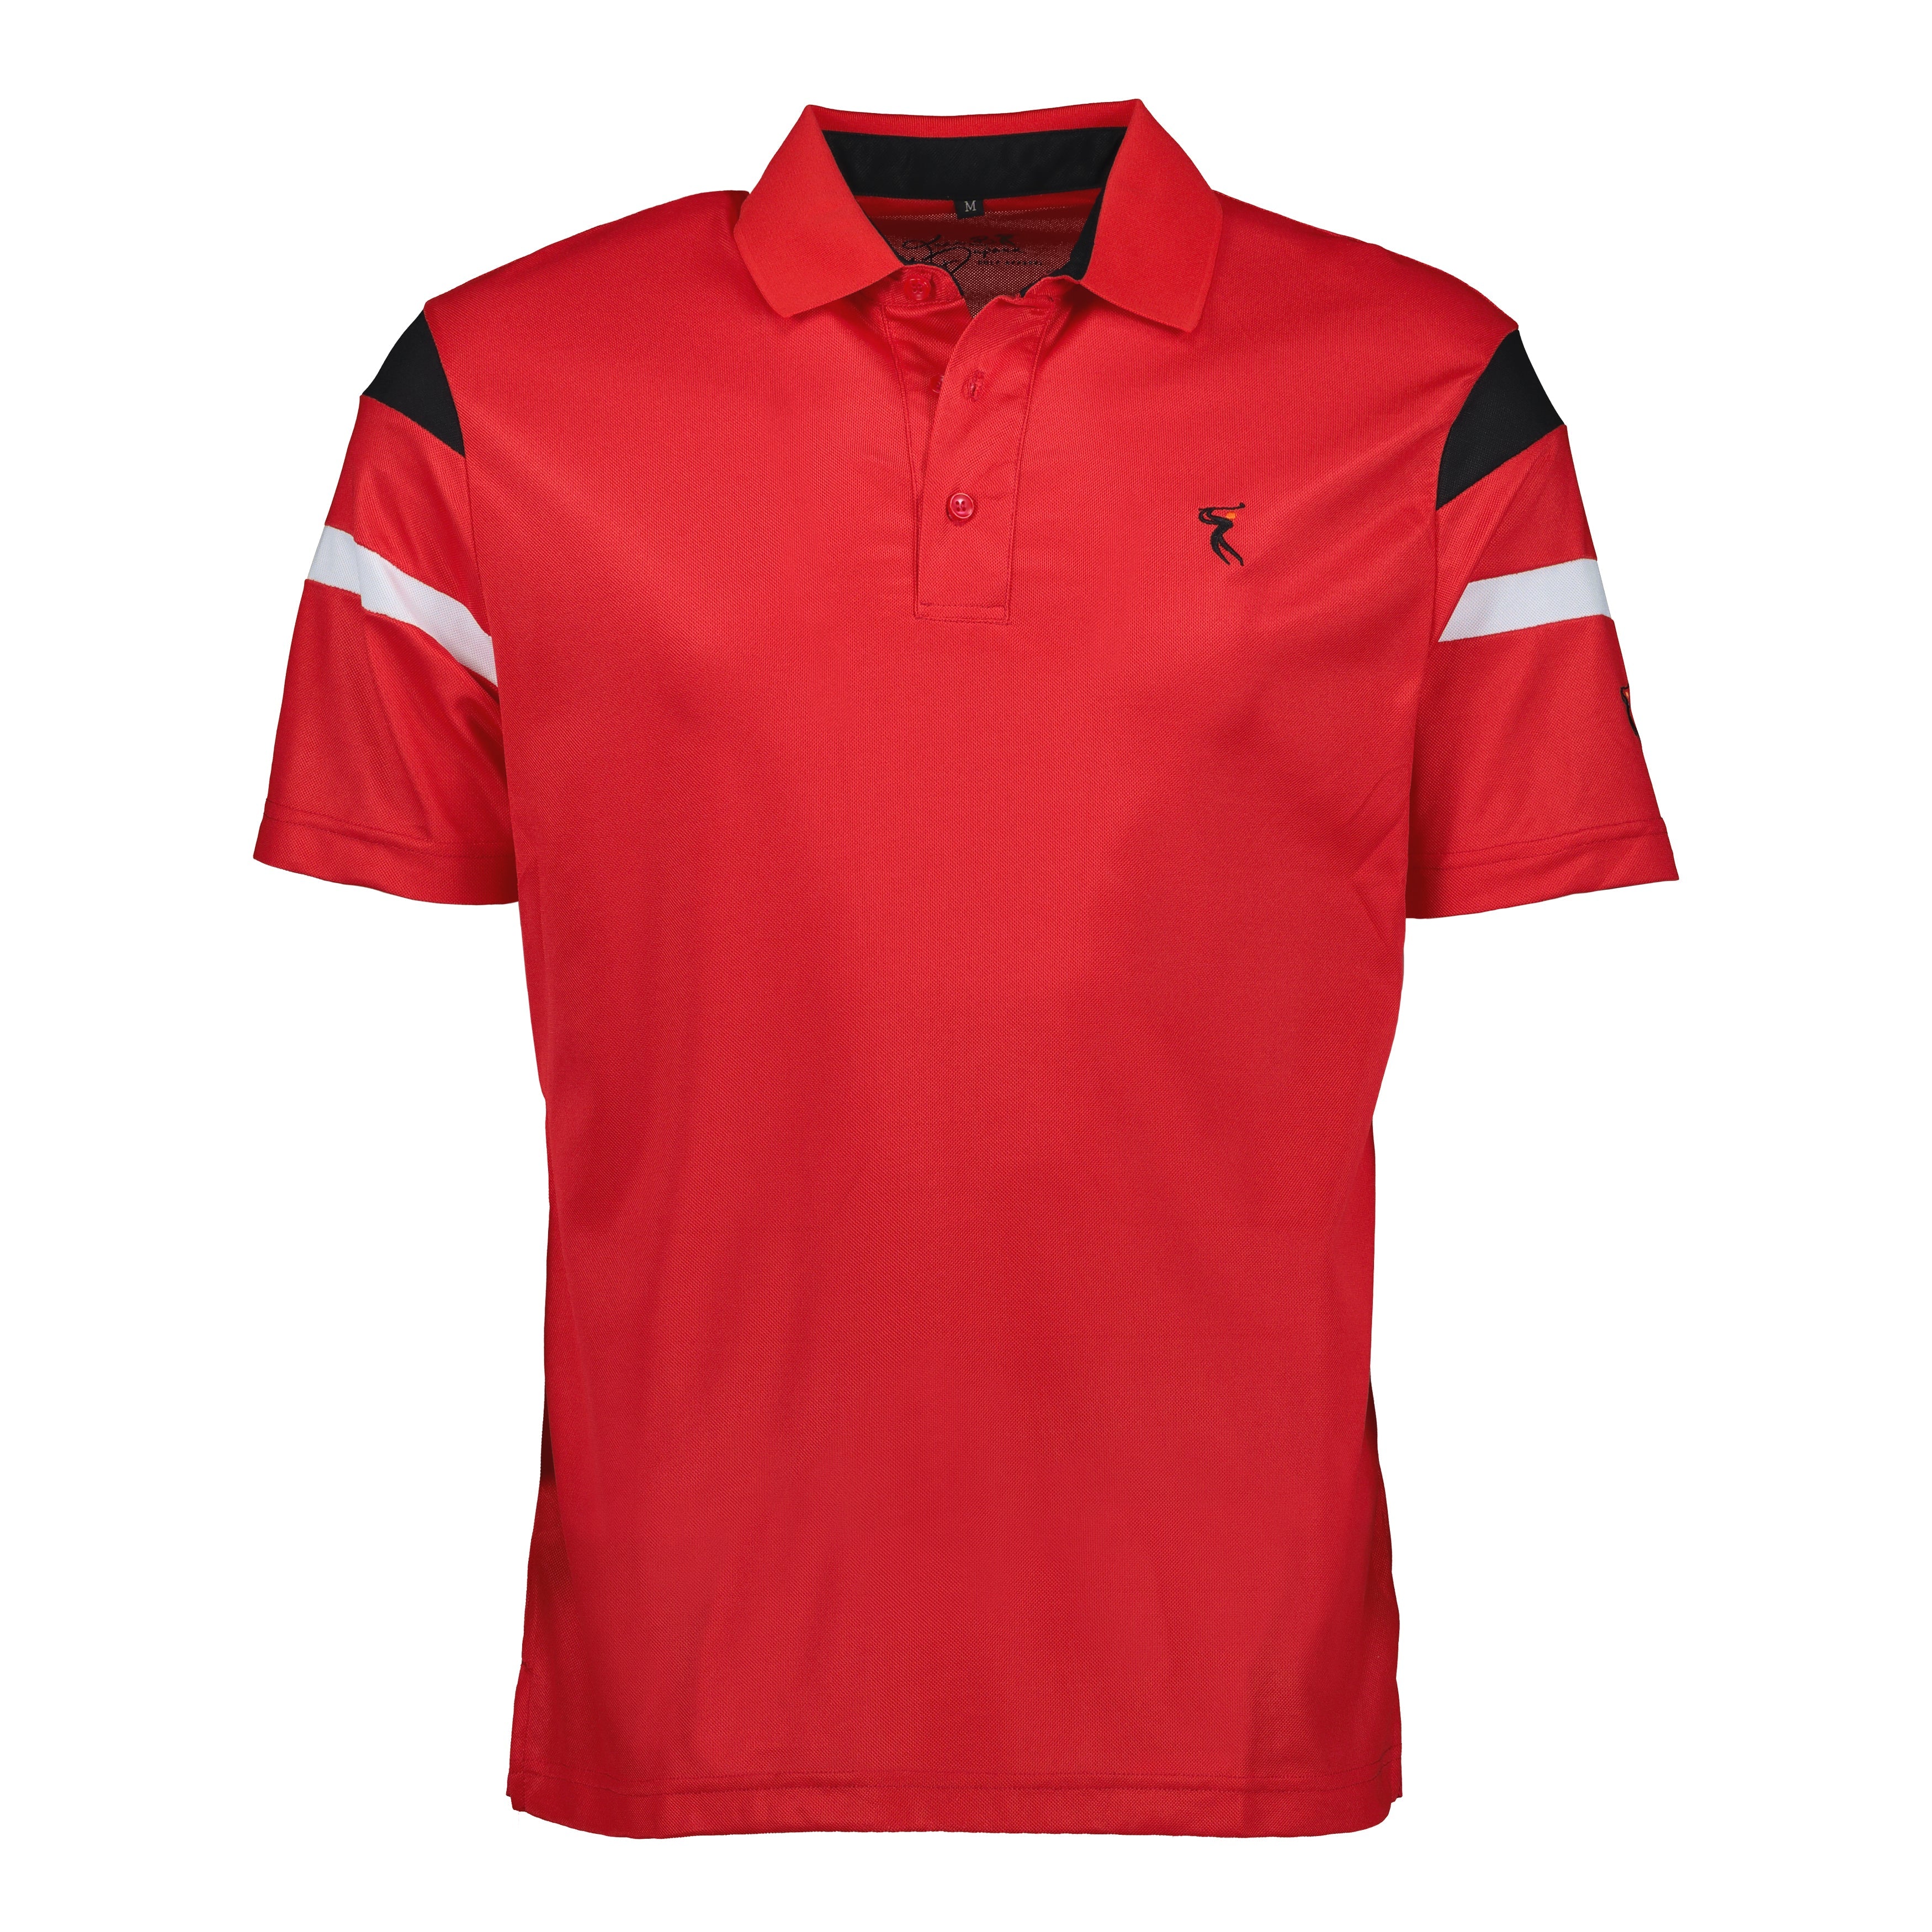 DriFIT Golf Shirts Men’s Short Sleeve Stripe My Golf Shirts